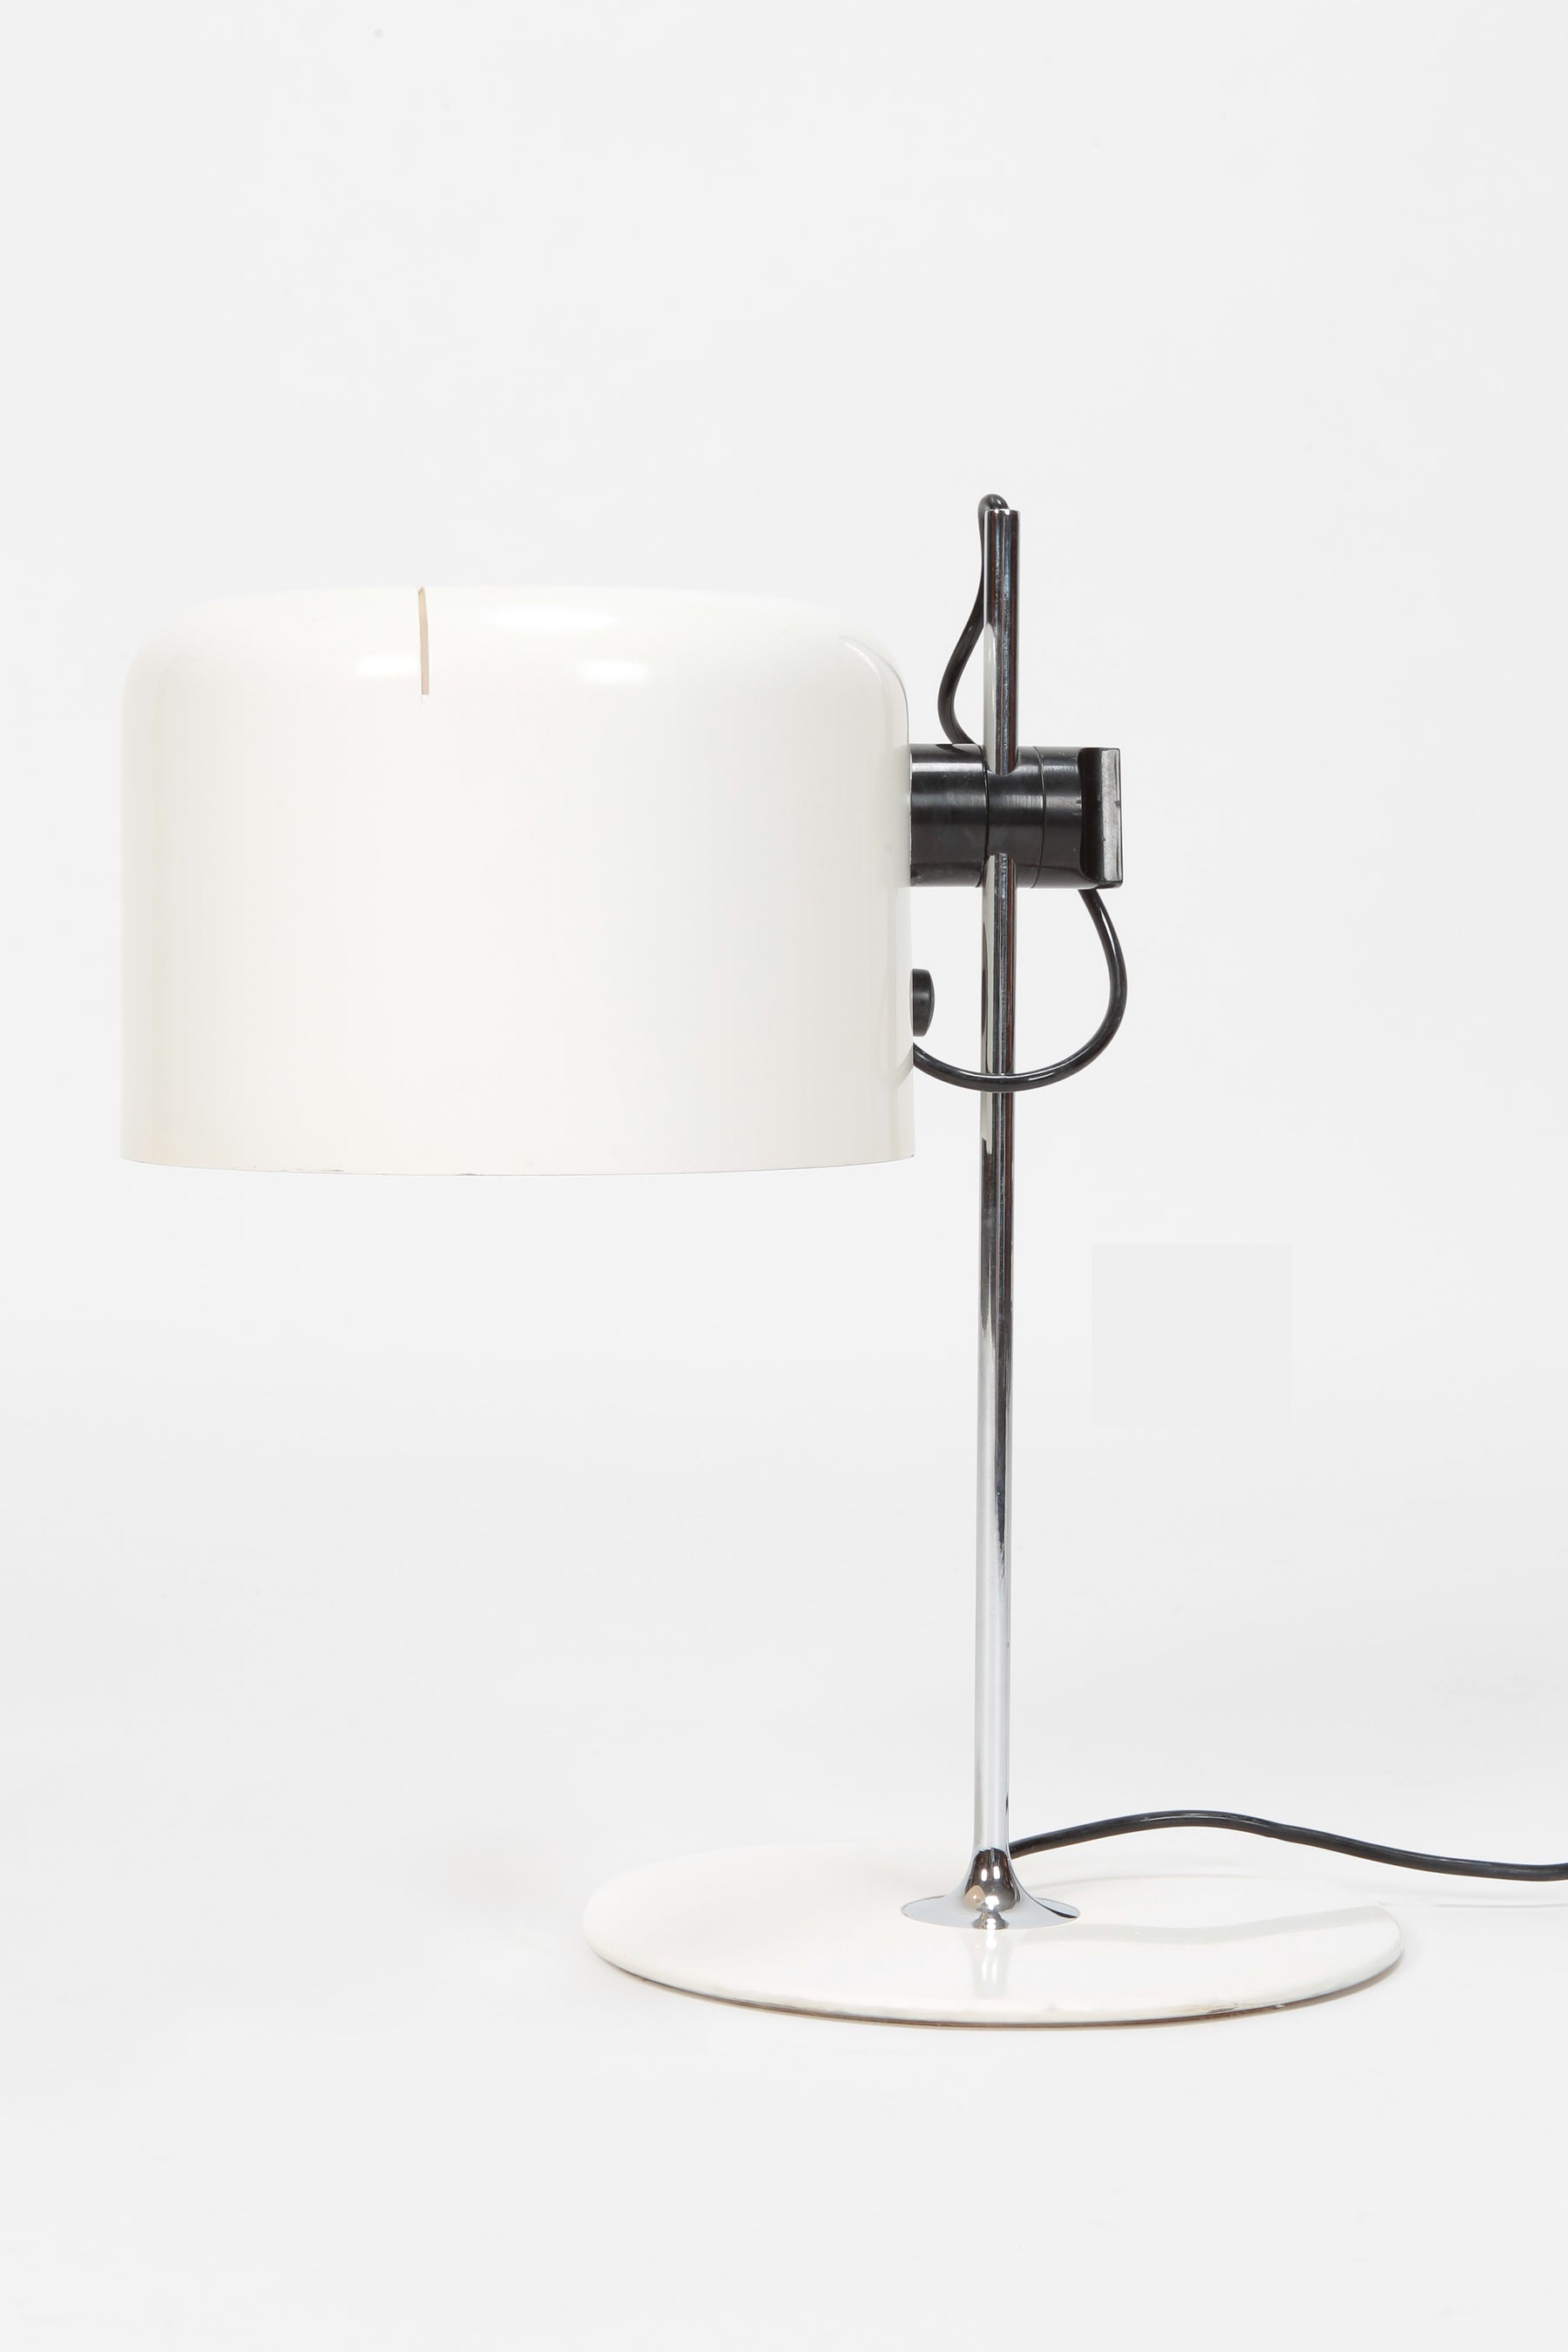 Joe Colombo "Coupe" Table Lamp, O-Luce SpA, 60s